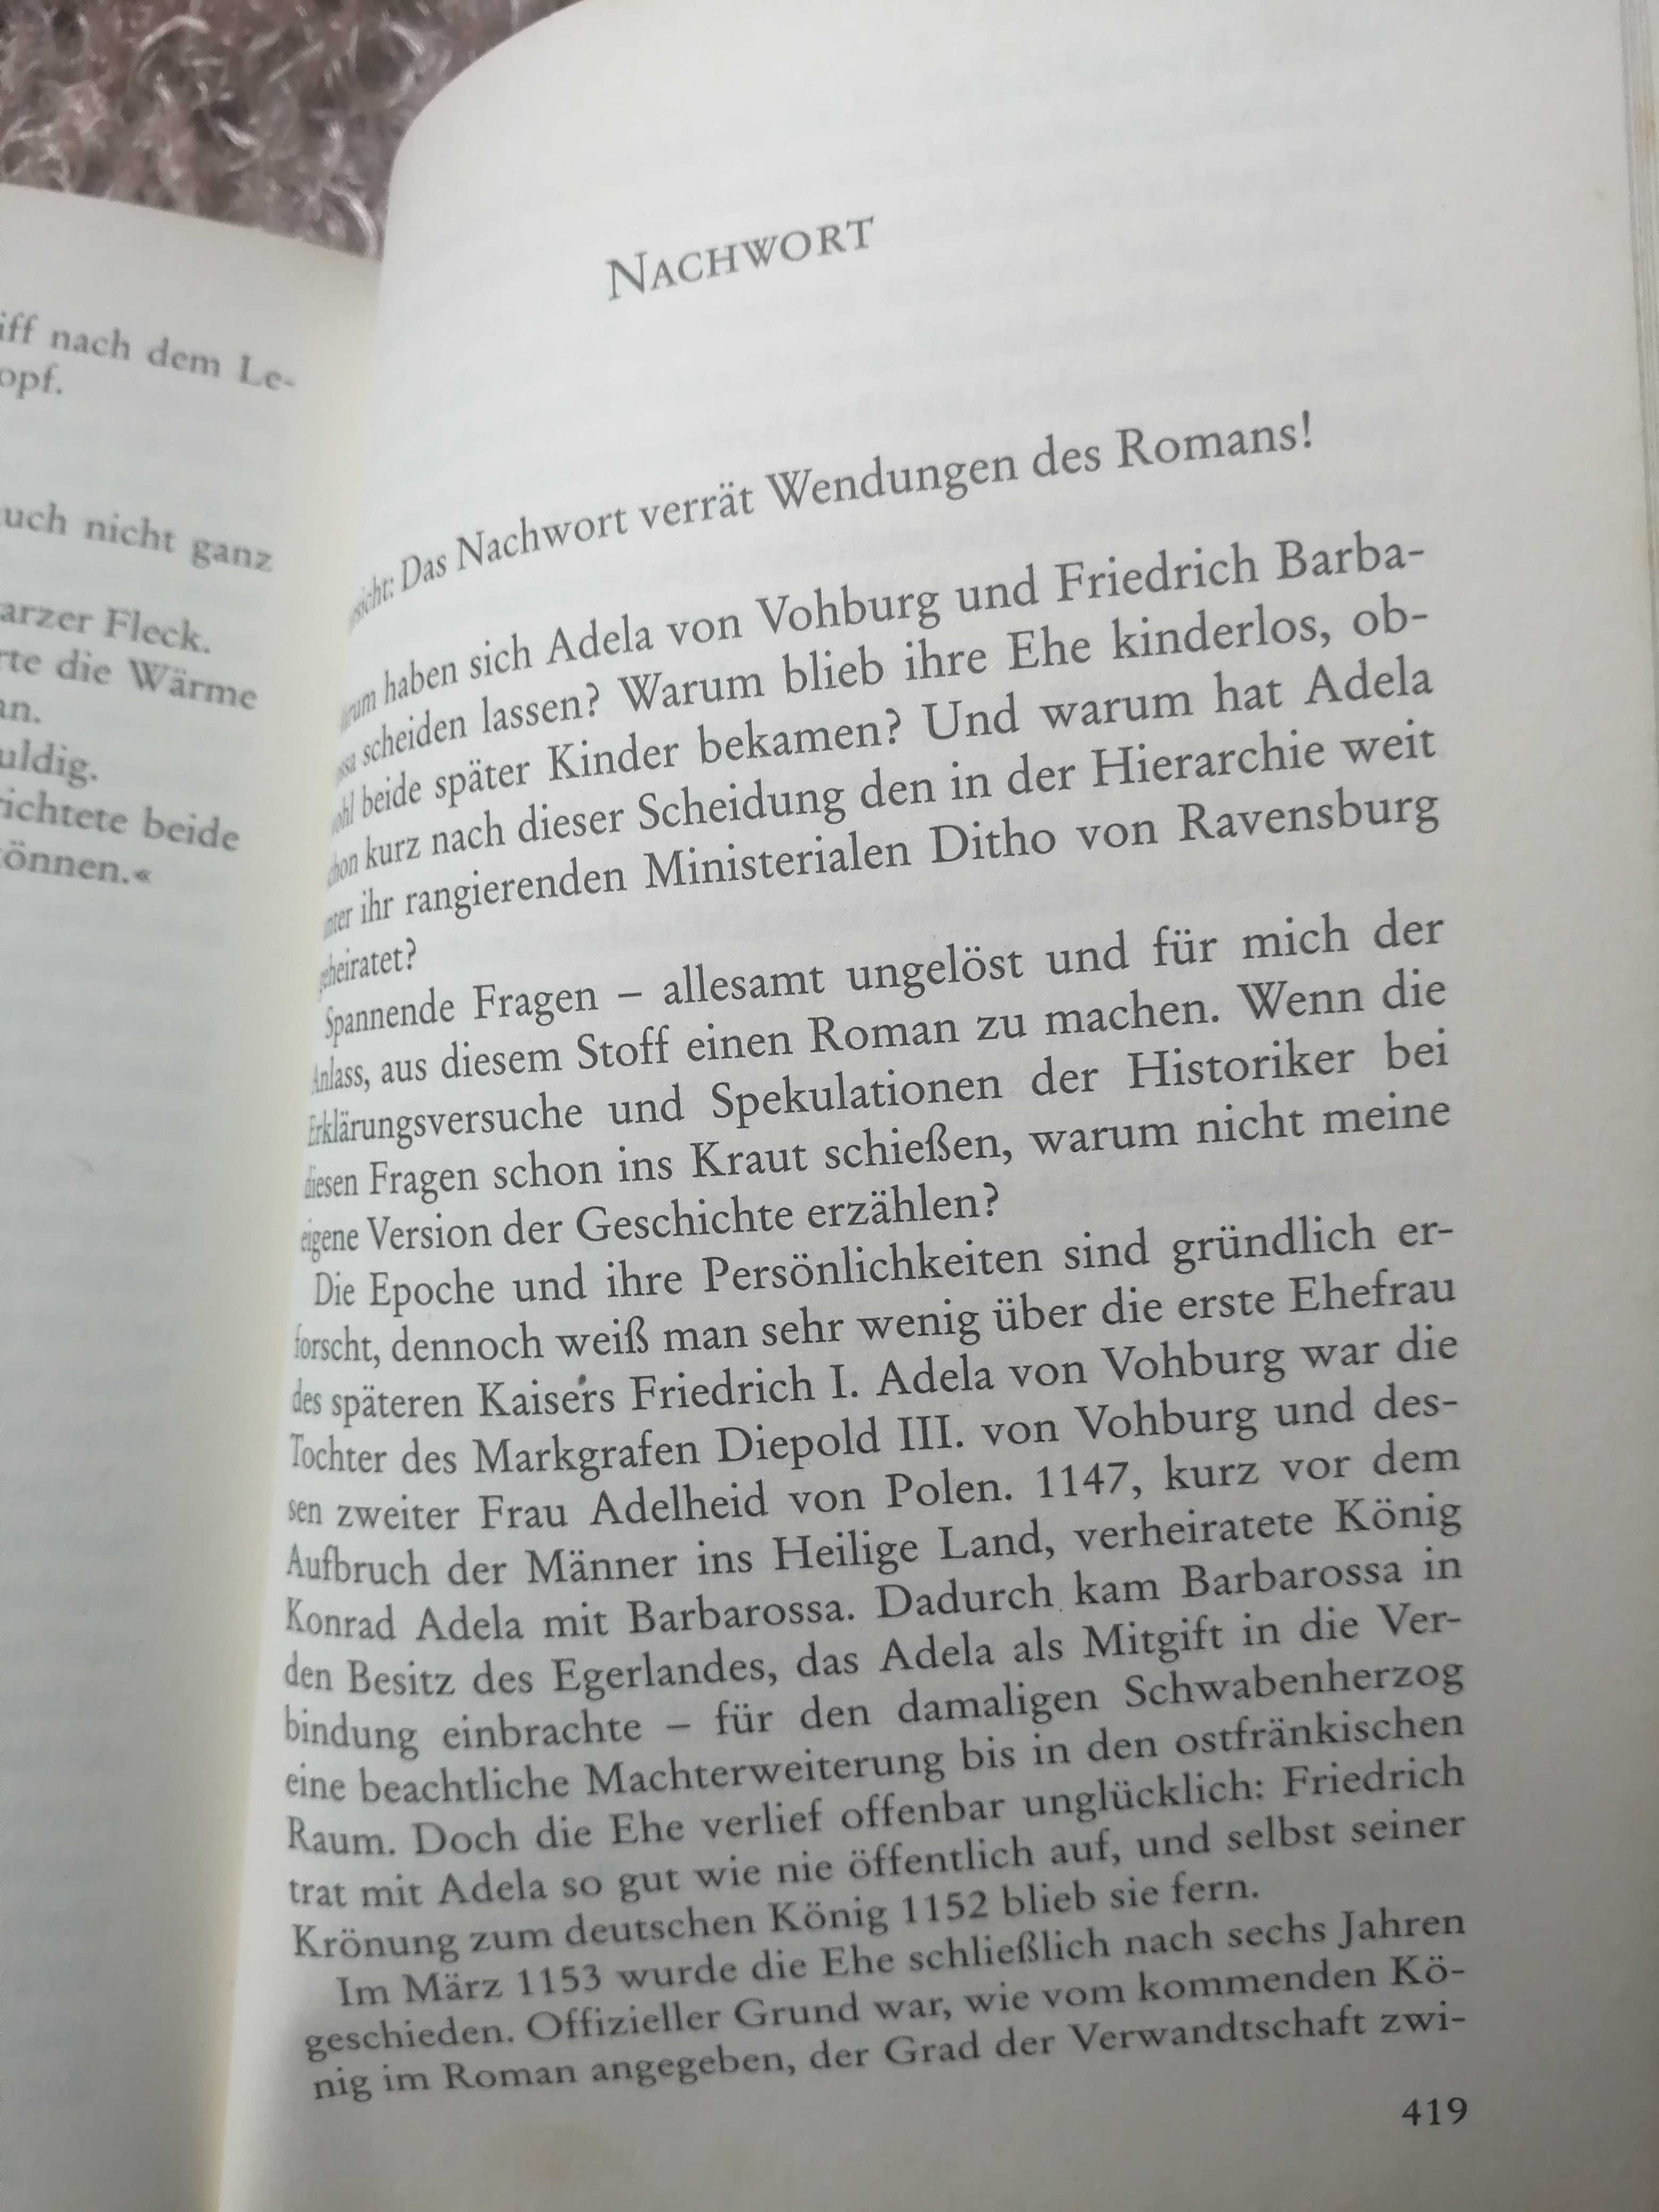 Історичний роман на німецькій мові Simon Rost "Wie ein Falke im Sturm"